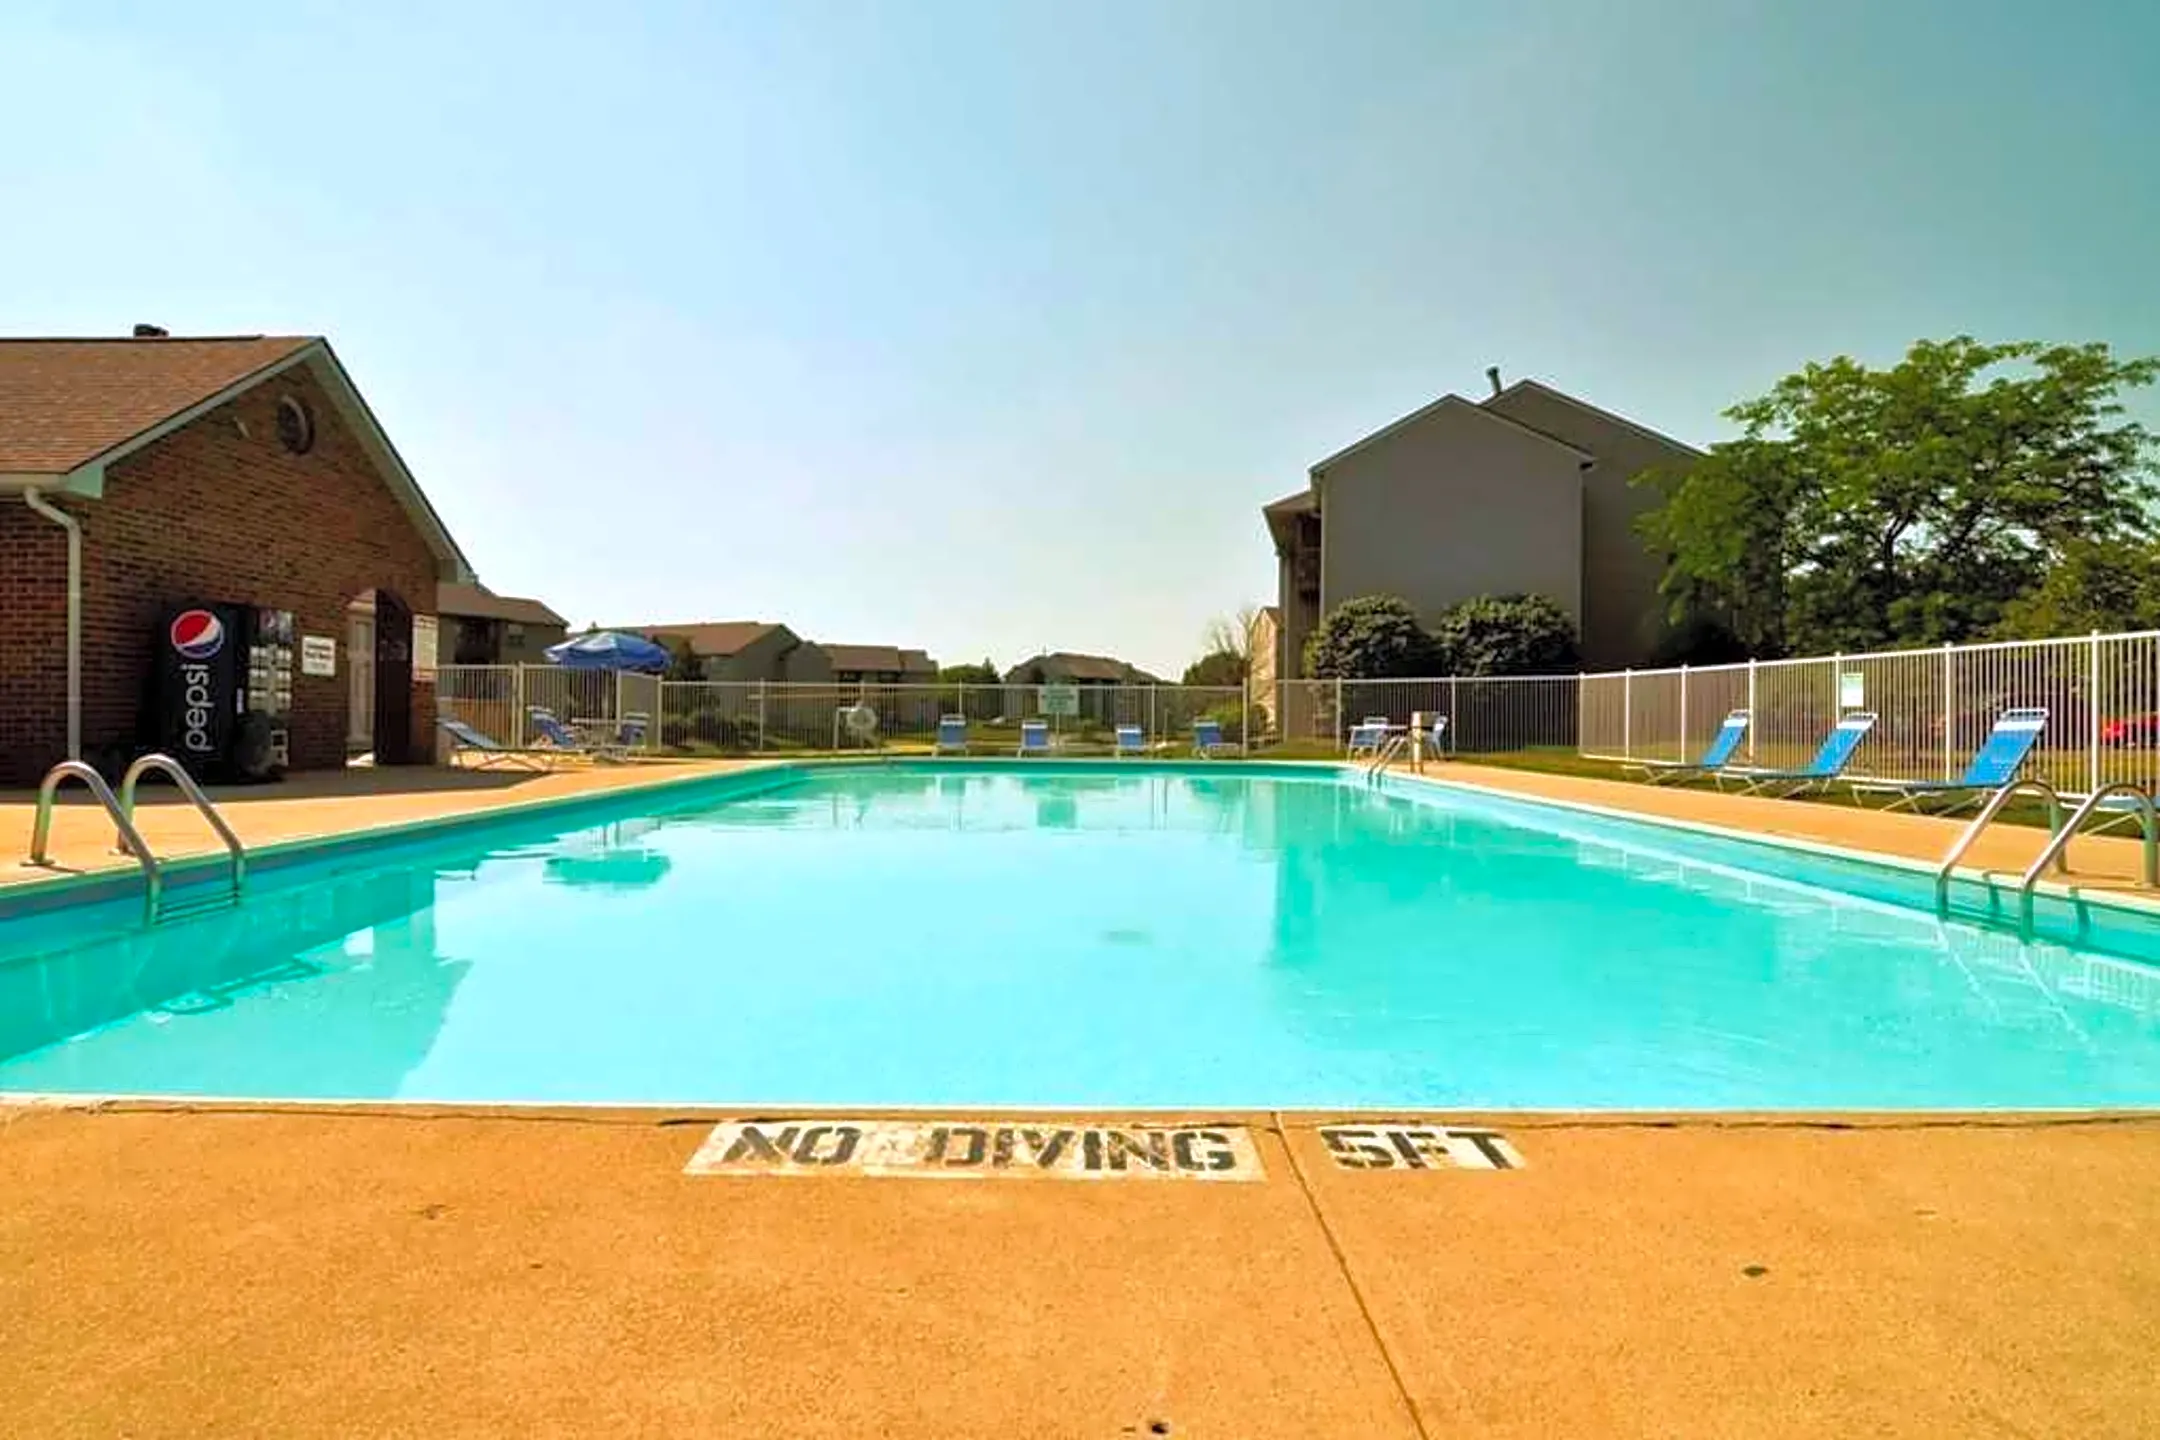 Pool - Crystal Lake - Hilliard, OH